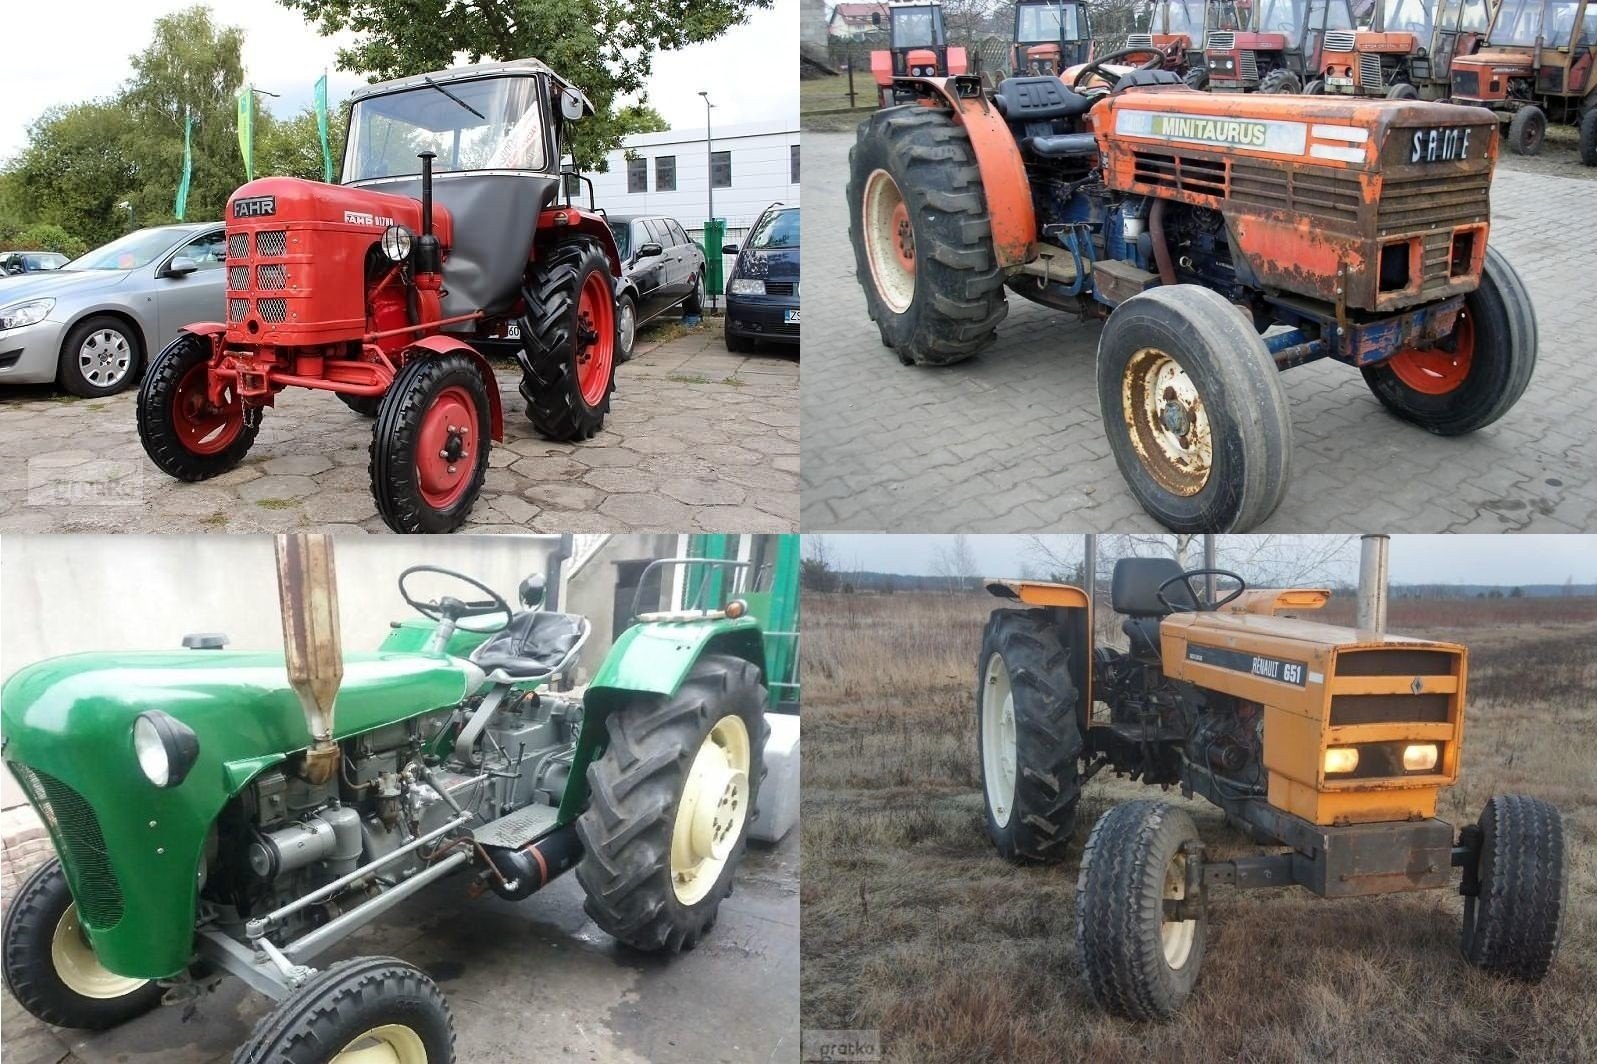 Tanie traktory rolnicze na sprzedaż 2021. Te ogłoszenia ciągników to  prawdziwe okazje! [ZDJĘCIA, CENY, OFERTY] | Gazeta Współczesna